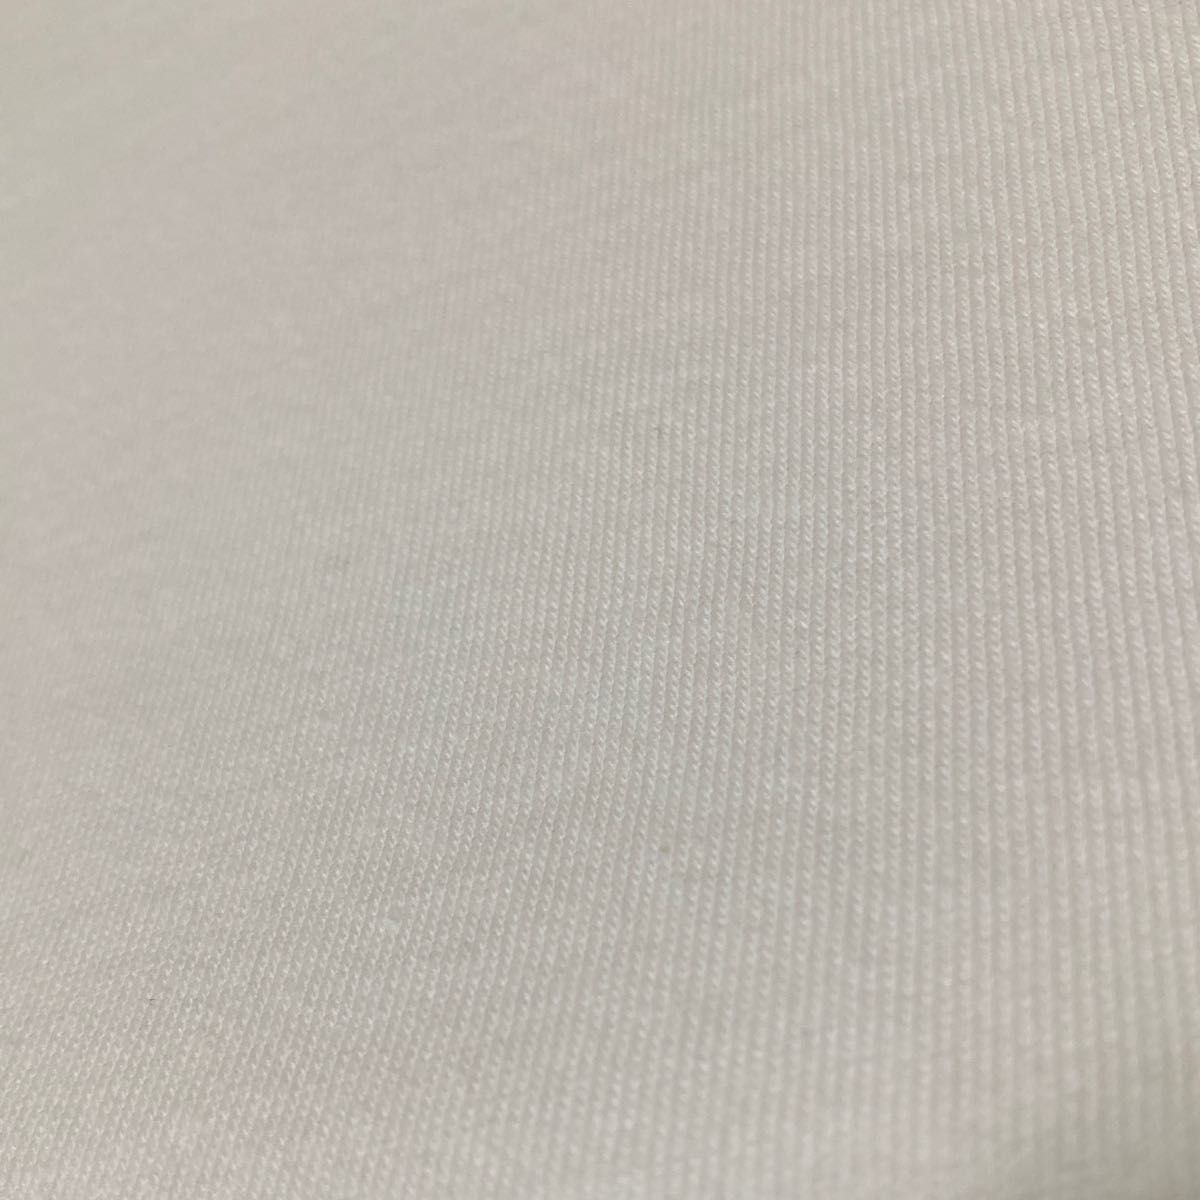 ★☆moment+☆ムジボリュームスリーブプルオーバー 長袖 Tシャツ カットソー トップス ホワイト 白 ロンT 